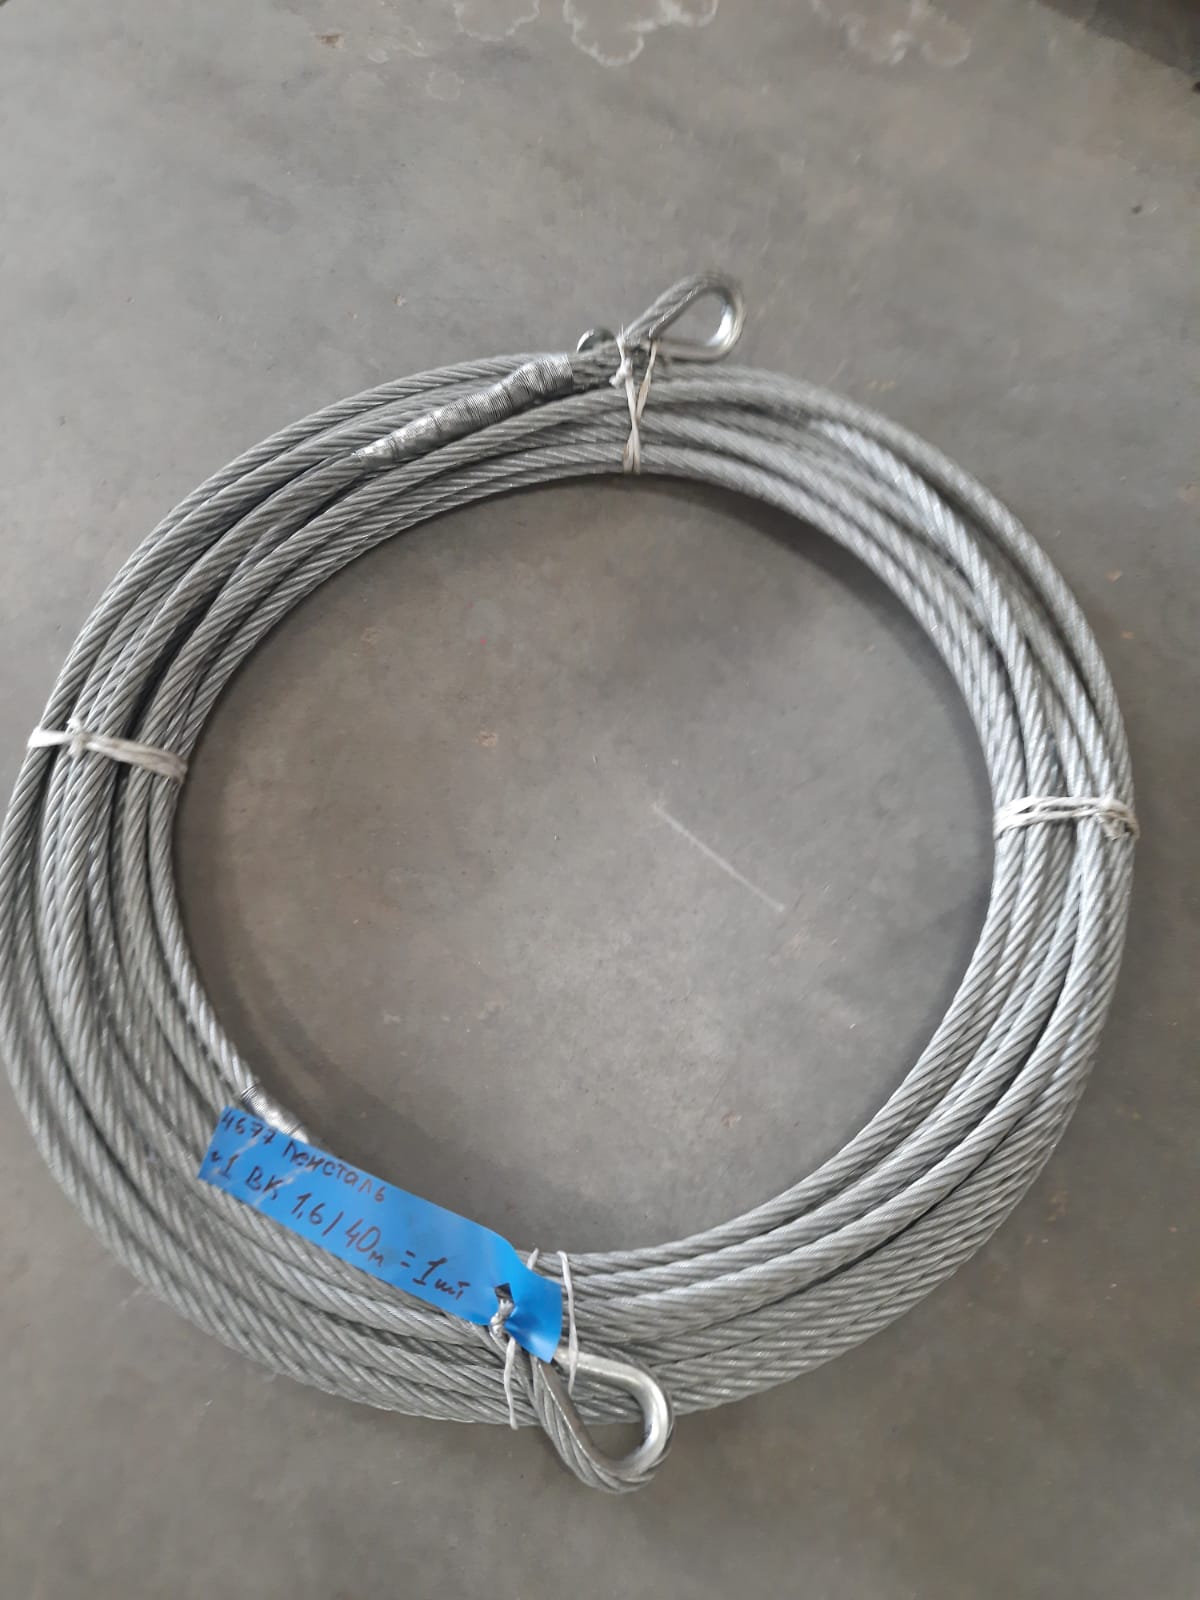 Трос стальной оцинк. ф13,5мм для протяжки(подвеса) кабеля L=40м заплёт, оклетневка с петлями  